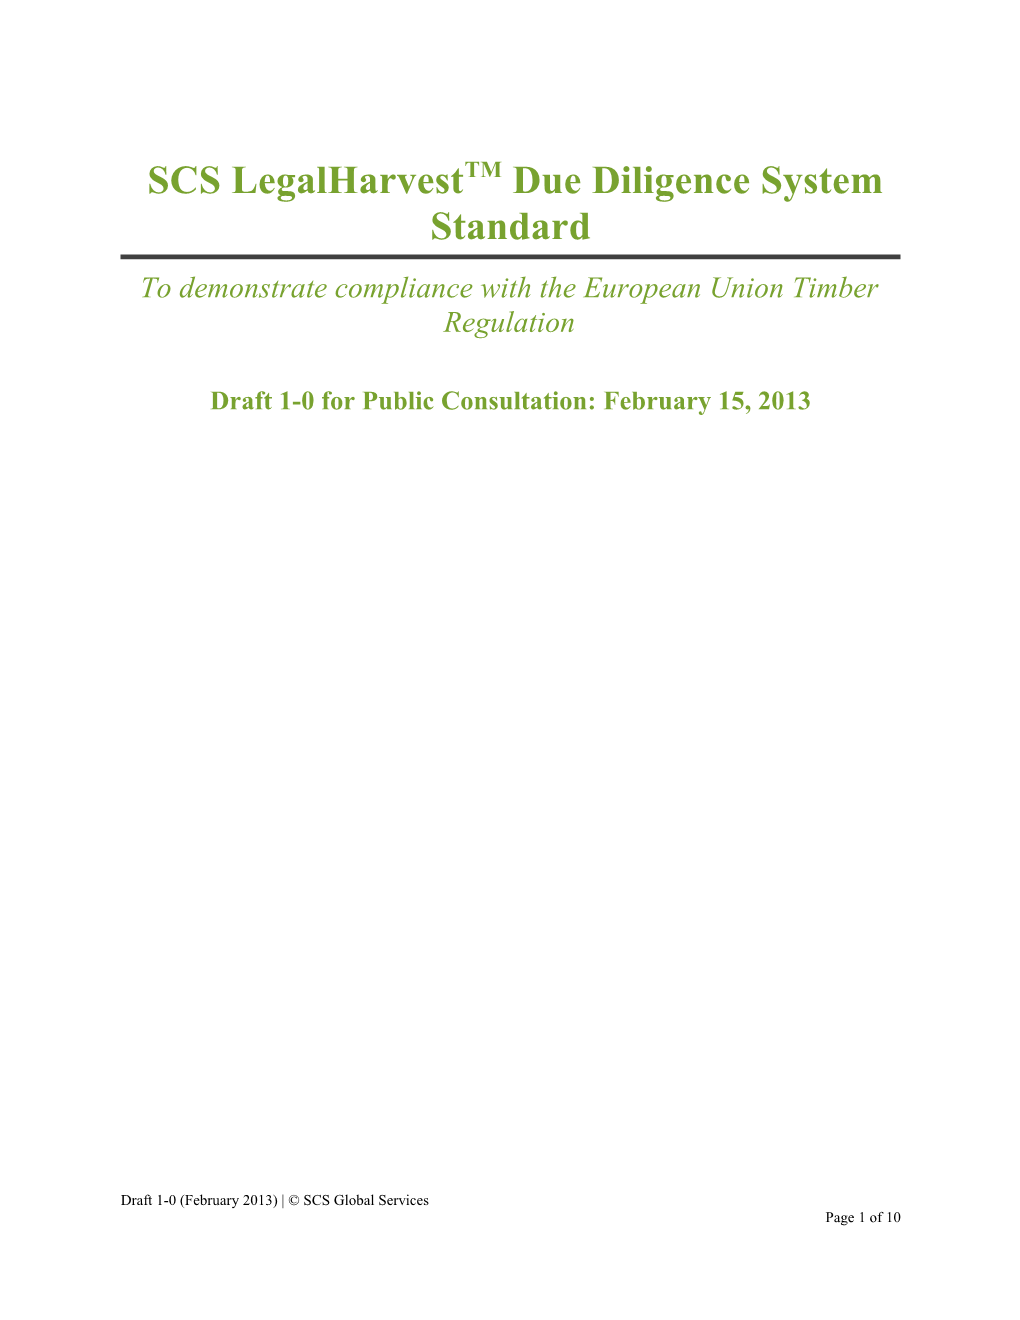 SCS Legalharvesttmdue Diligence System Standard